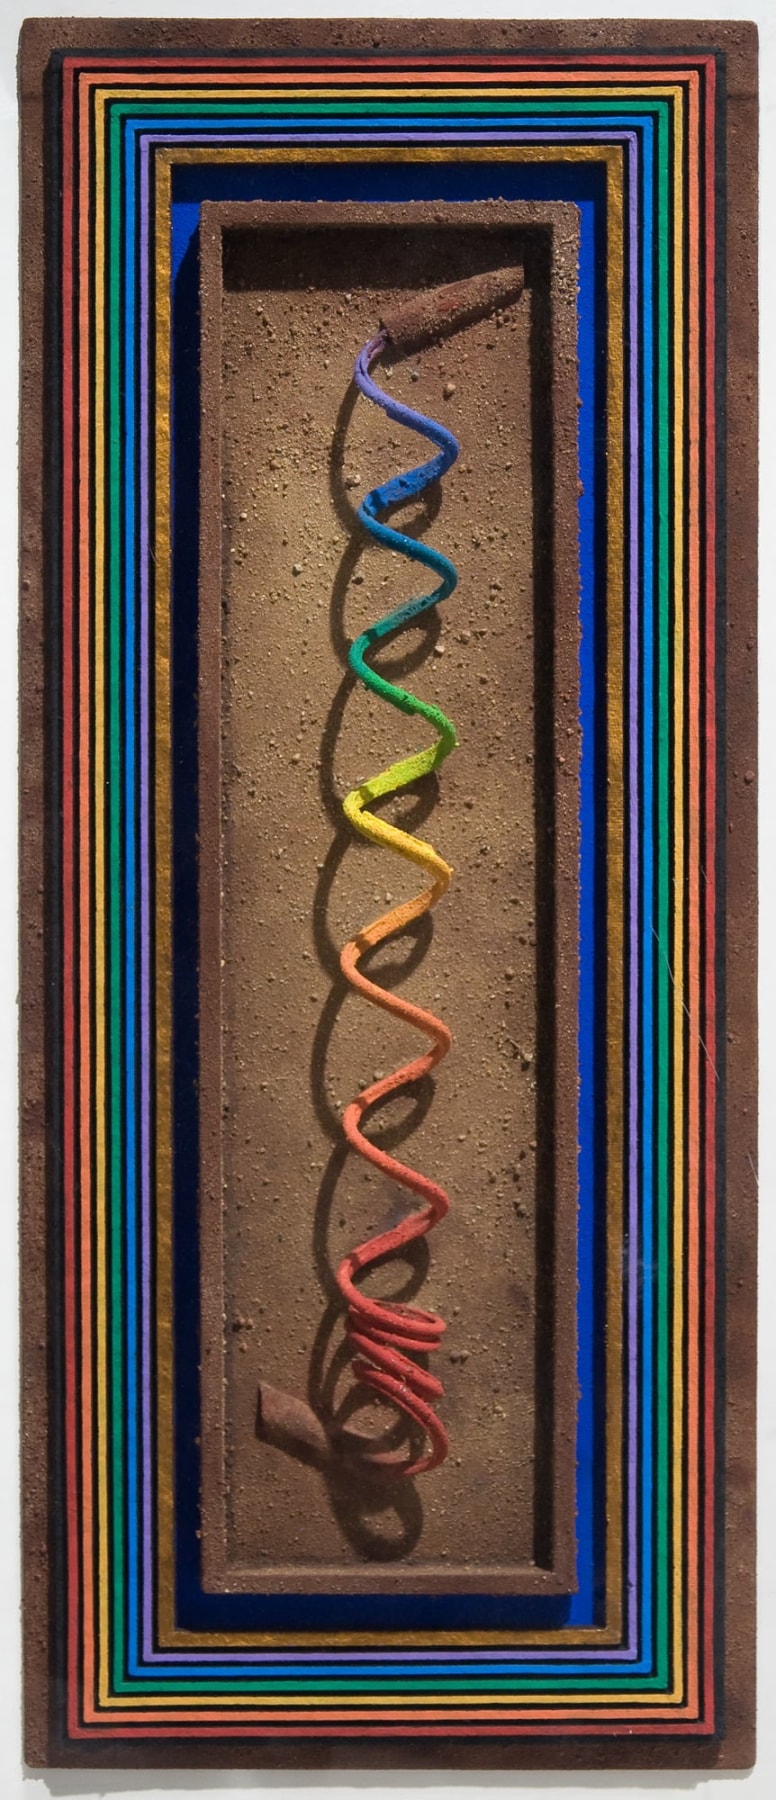 RON ROBERTSON , Rainbow Series: Poseidon's Spiral, 1990